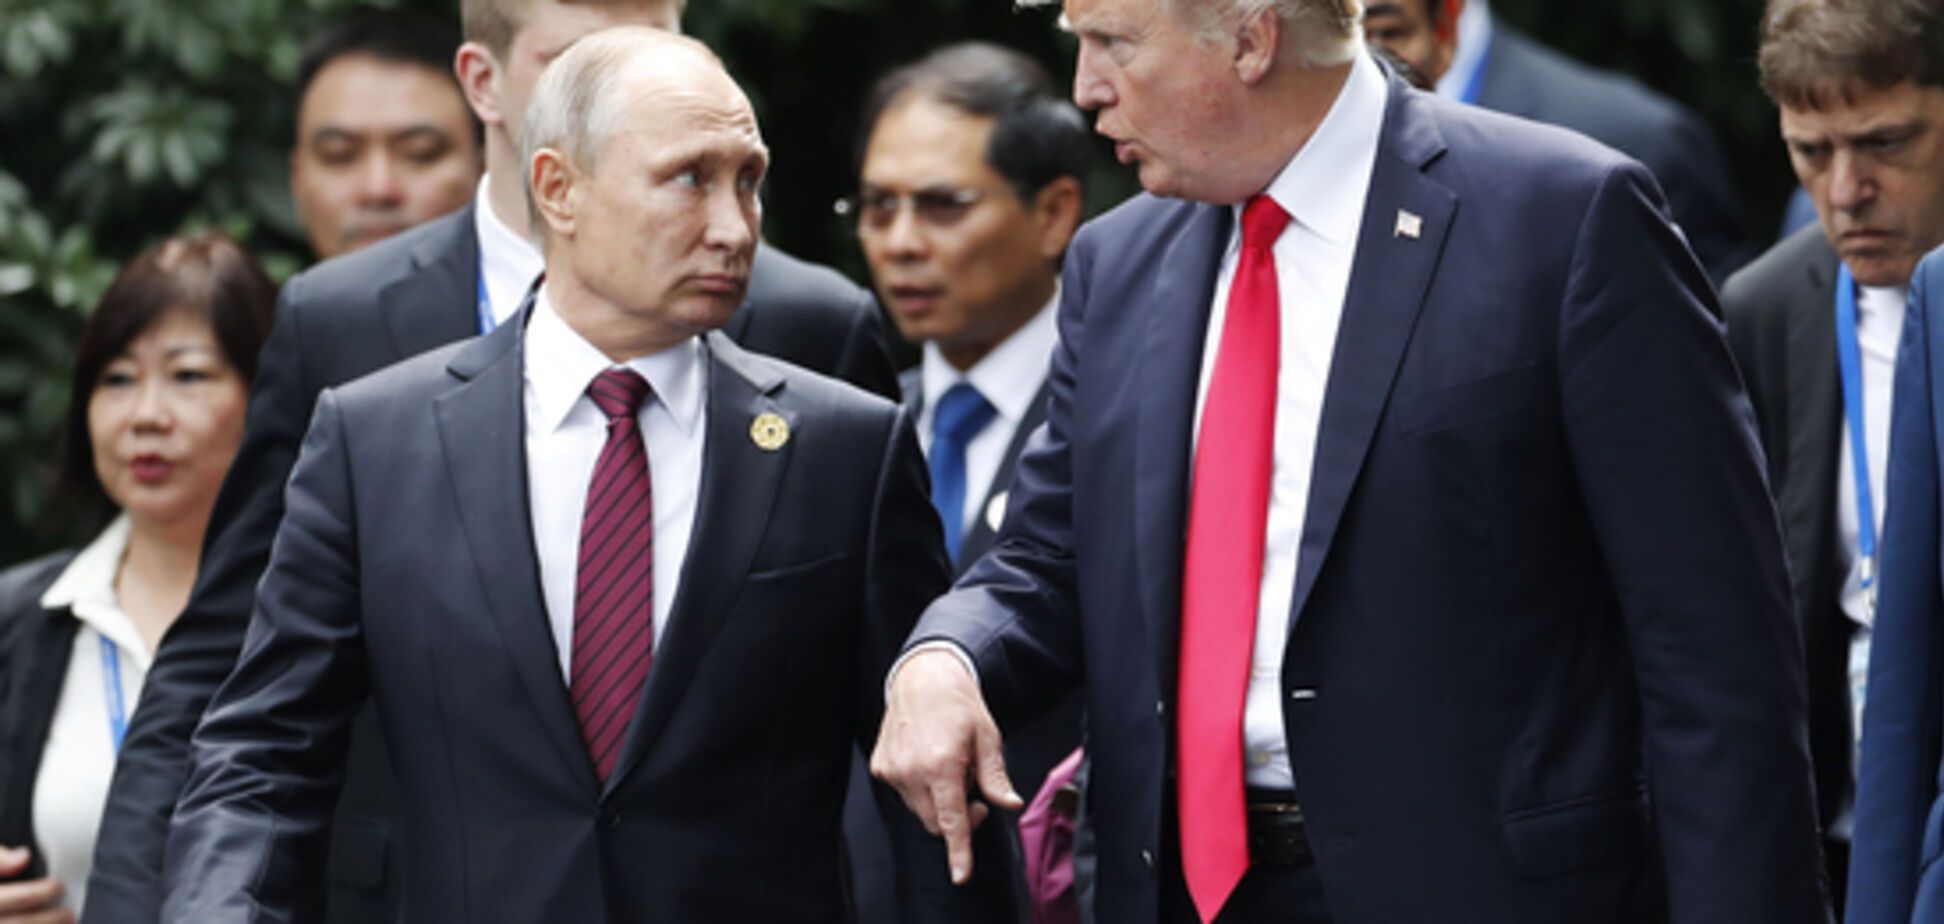 Примирения не будет? В США назвали темы встречи Трампа с Путиным